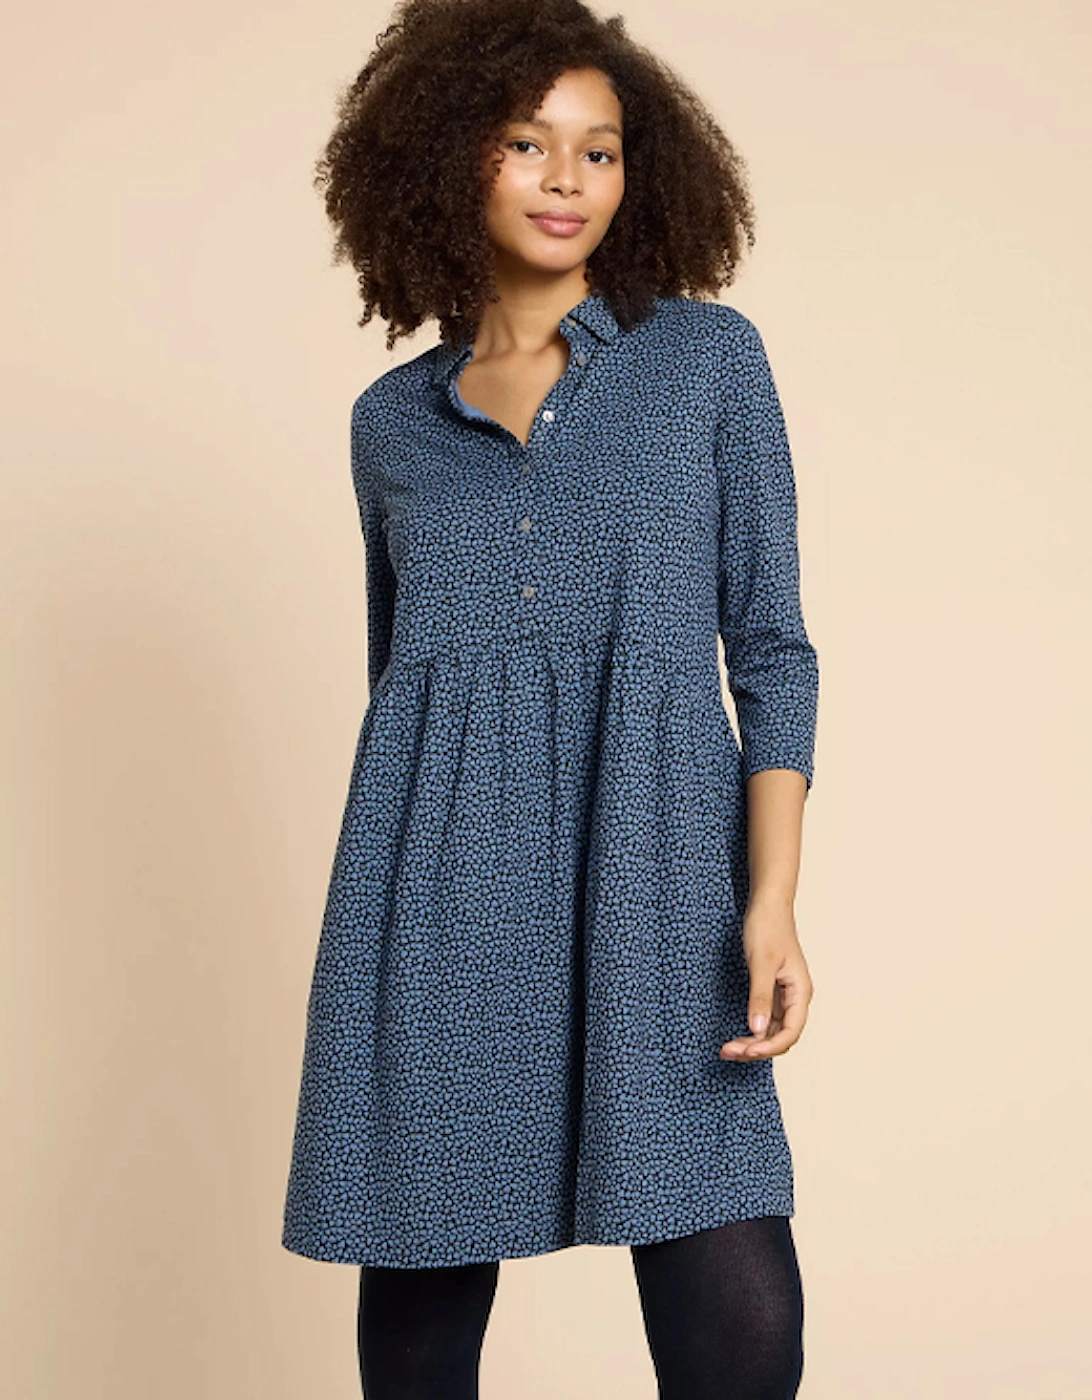 Petite Women's Everly Jersey Shirt Dress Blue Print, 8 of 7